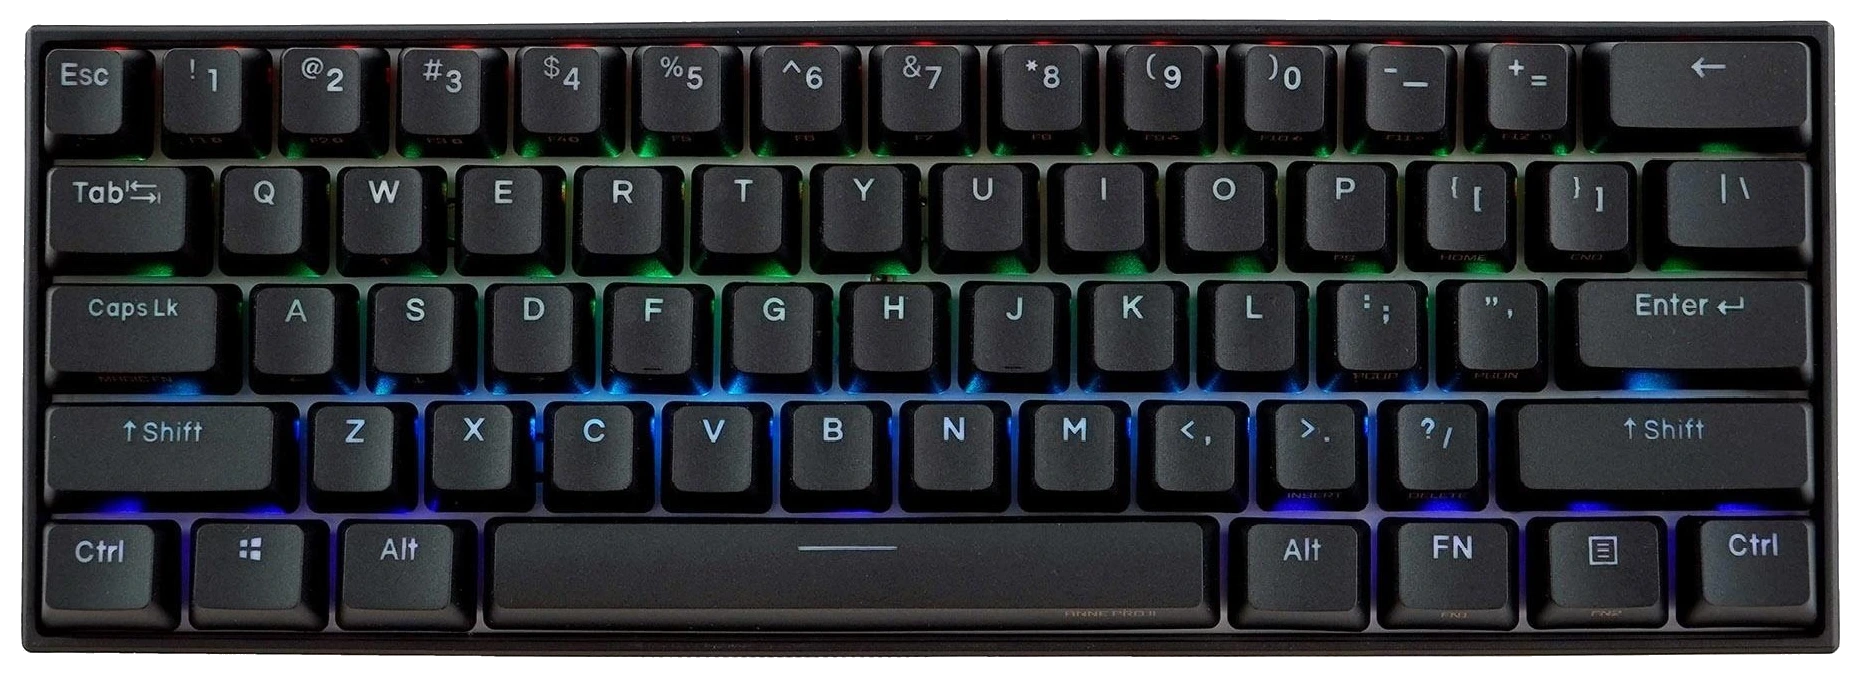 anne pro 2 keyboard